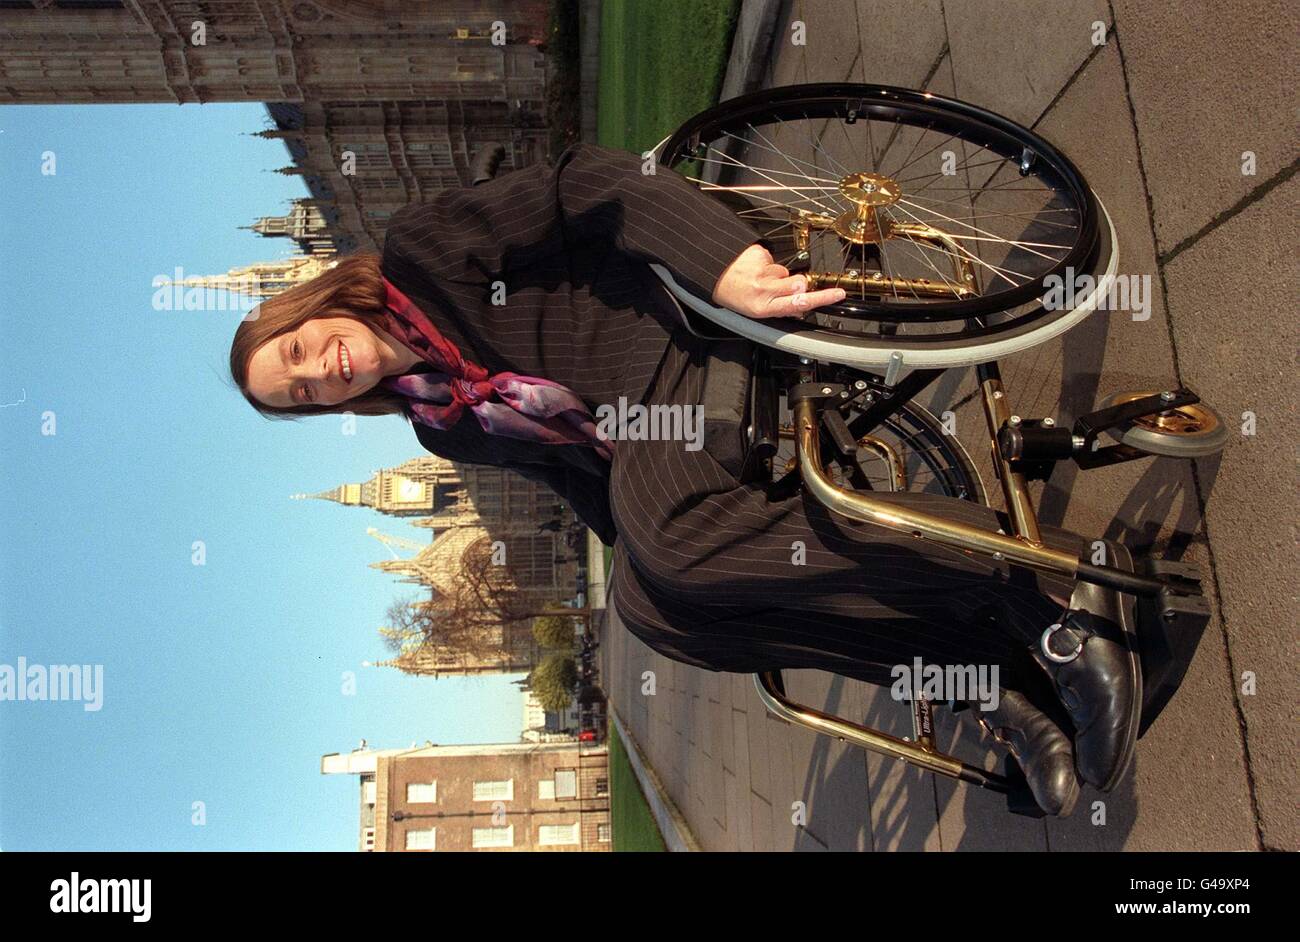 Ann Begg, die für den Rollstuhl gebundene Labour-Abgeordnete für Aberdeen South, fand den ultimativen Rollstuhl, der bei besonderen Funktionen und Anlässen klug aussahen konnte, als sie heute (Donnerstag) in London den vergoldeten Kuschel-Rollstuhl in limitierter Auflage sah. Der Rollstuhl, der 1,475 kostet, ist Teil einer europaweit limitierten Auflage von nur 99 Stück, die von der Schweizer Firma Kuschel produziert wird, die eine hundertprozentige Tochtergesellschaft von Invacare UK ist. Foto von Tony Harris. Stockfoto